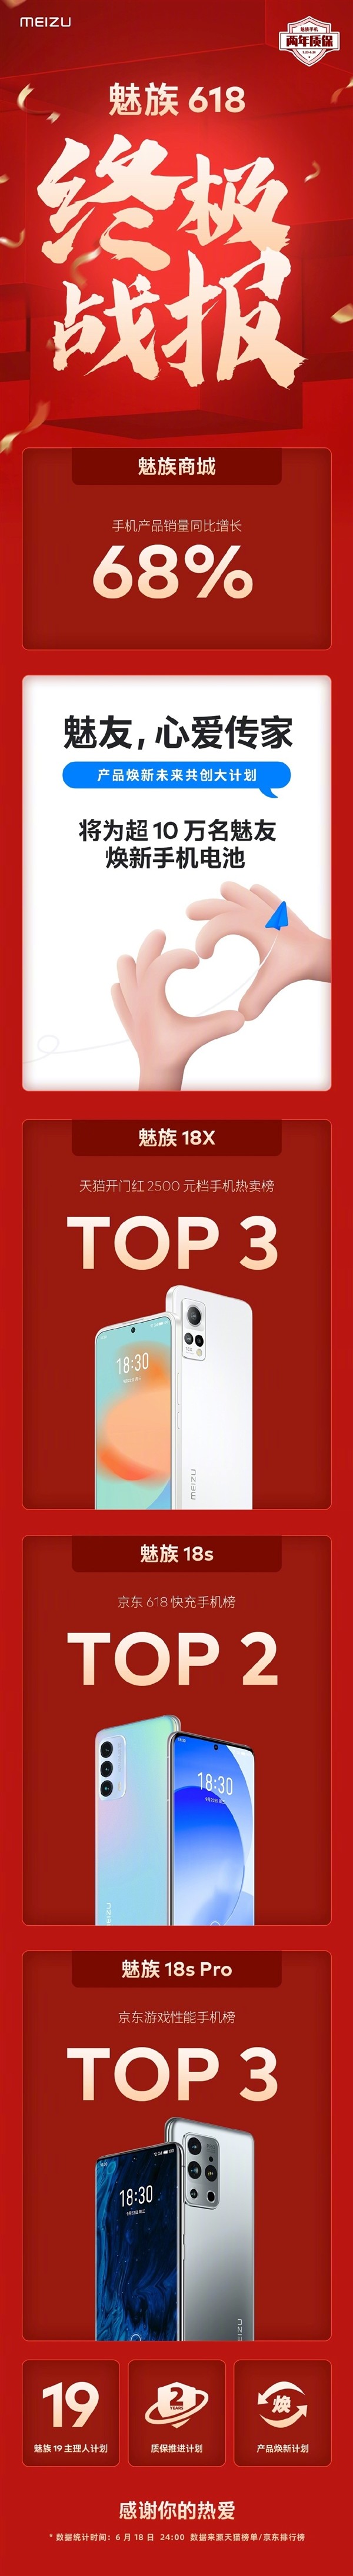 魅族 618 战报公布：手机销量同比增长 68%